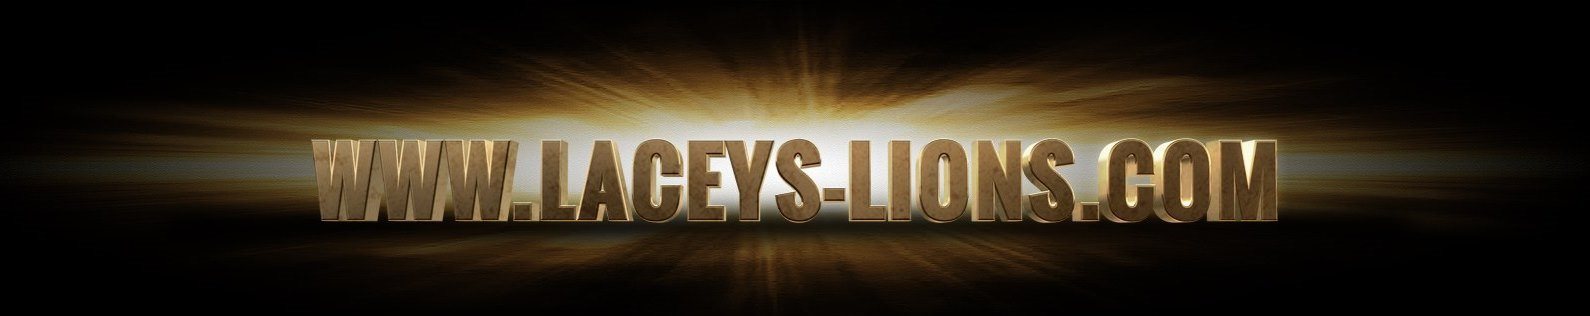 Laceys-Lions - deutsch